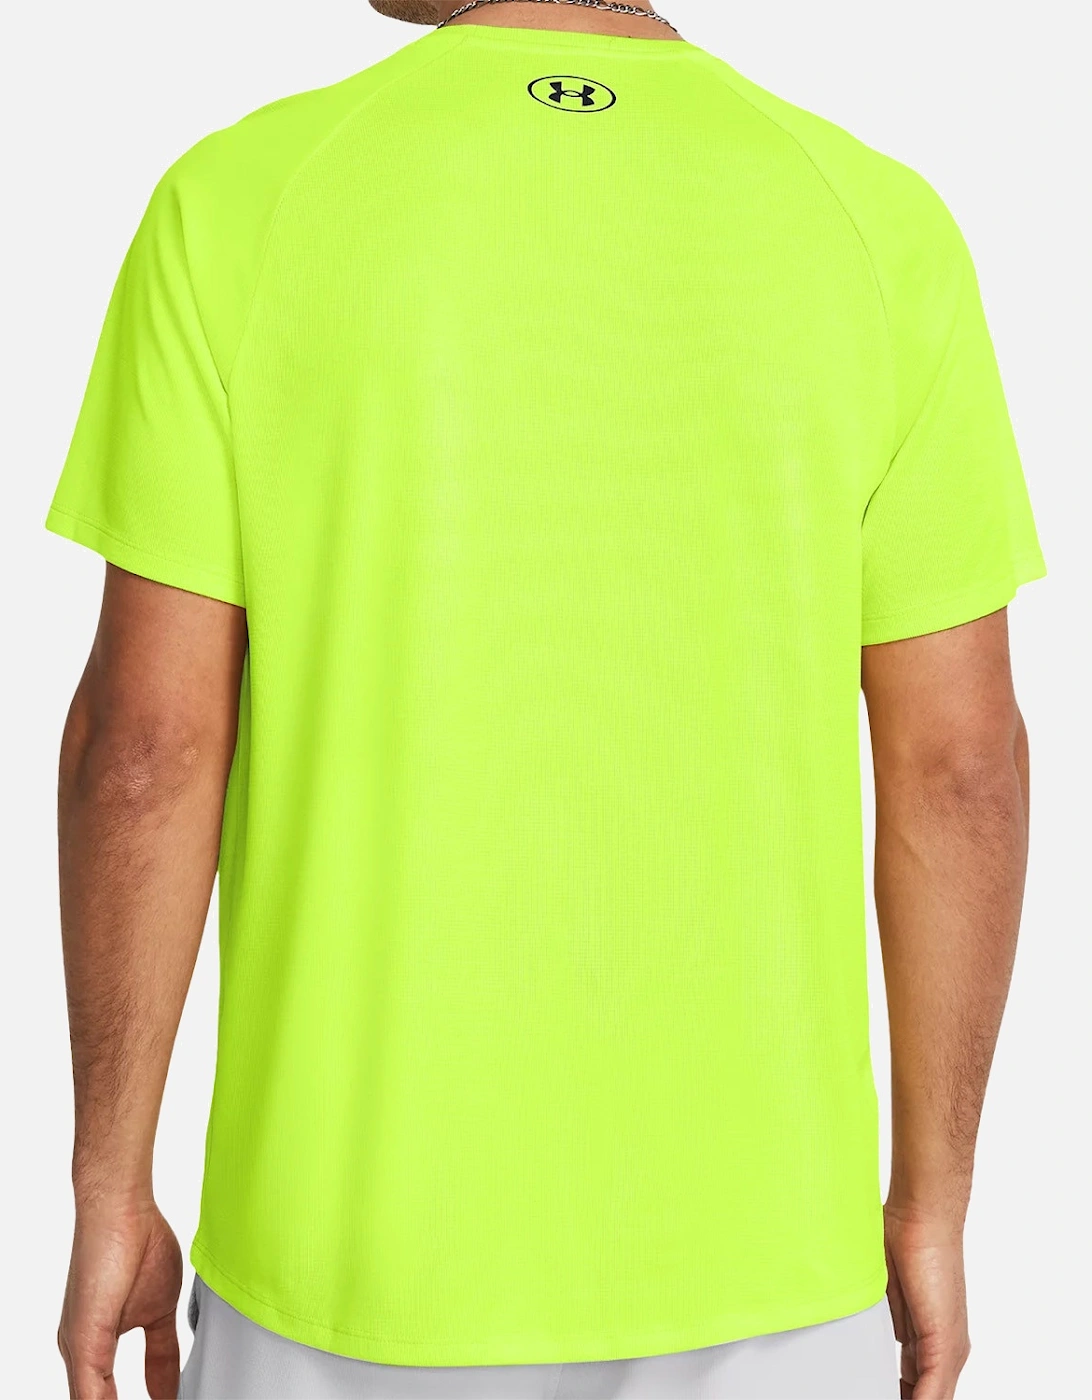 Mens Textured Tech T-Shirt (Yellow)